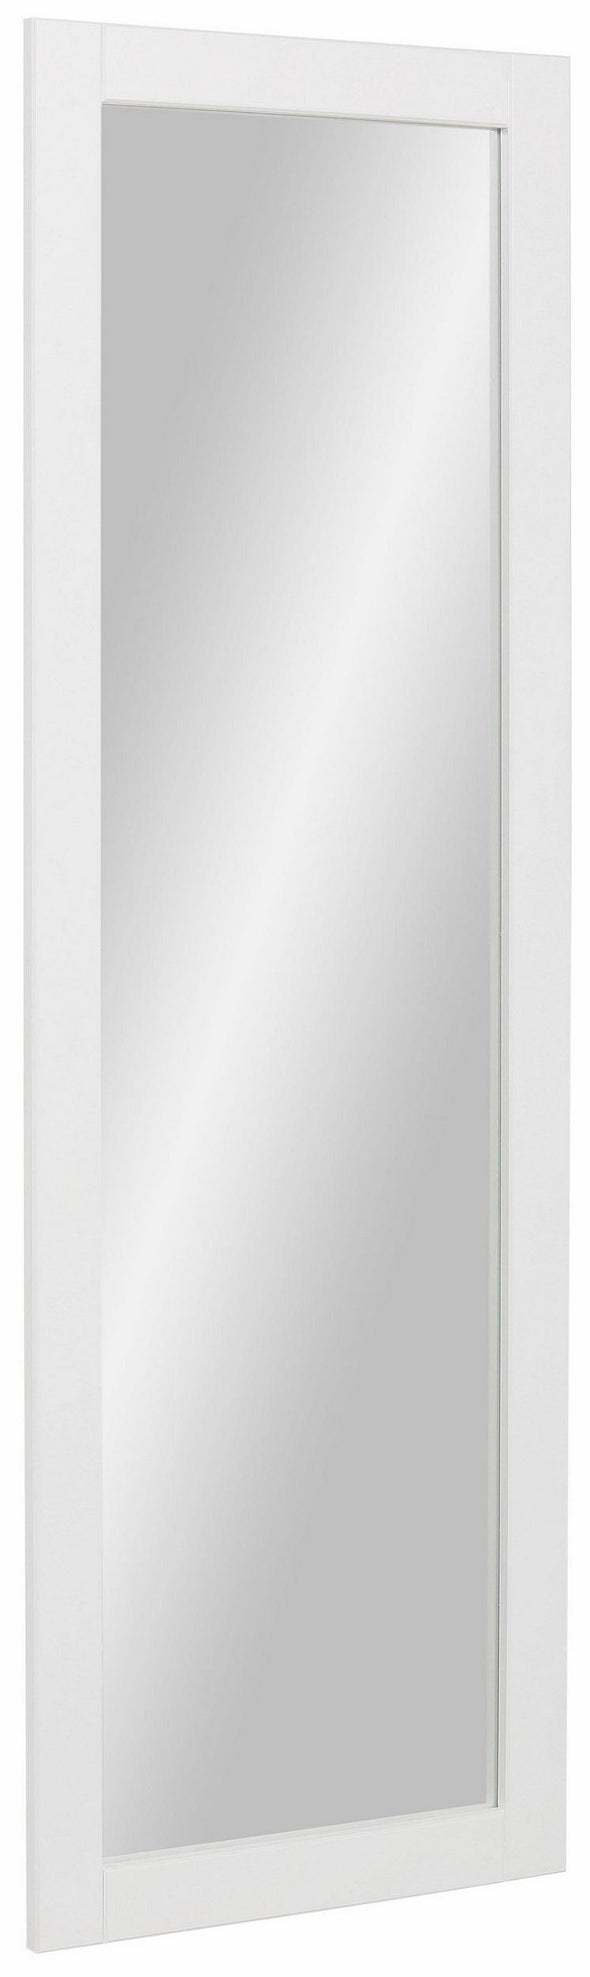 Oglinda »Rondo«, cu cadru din Mdf alb, 150x50 cm - LunaHome.ro